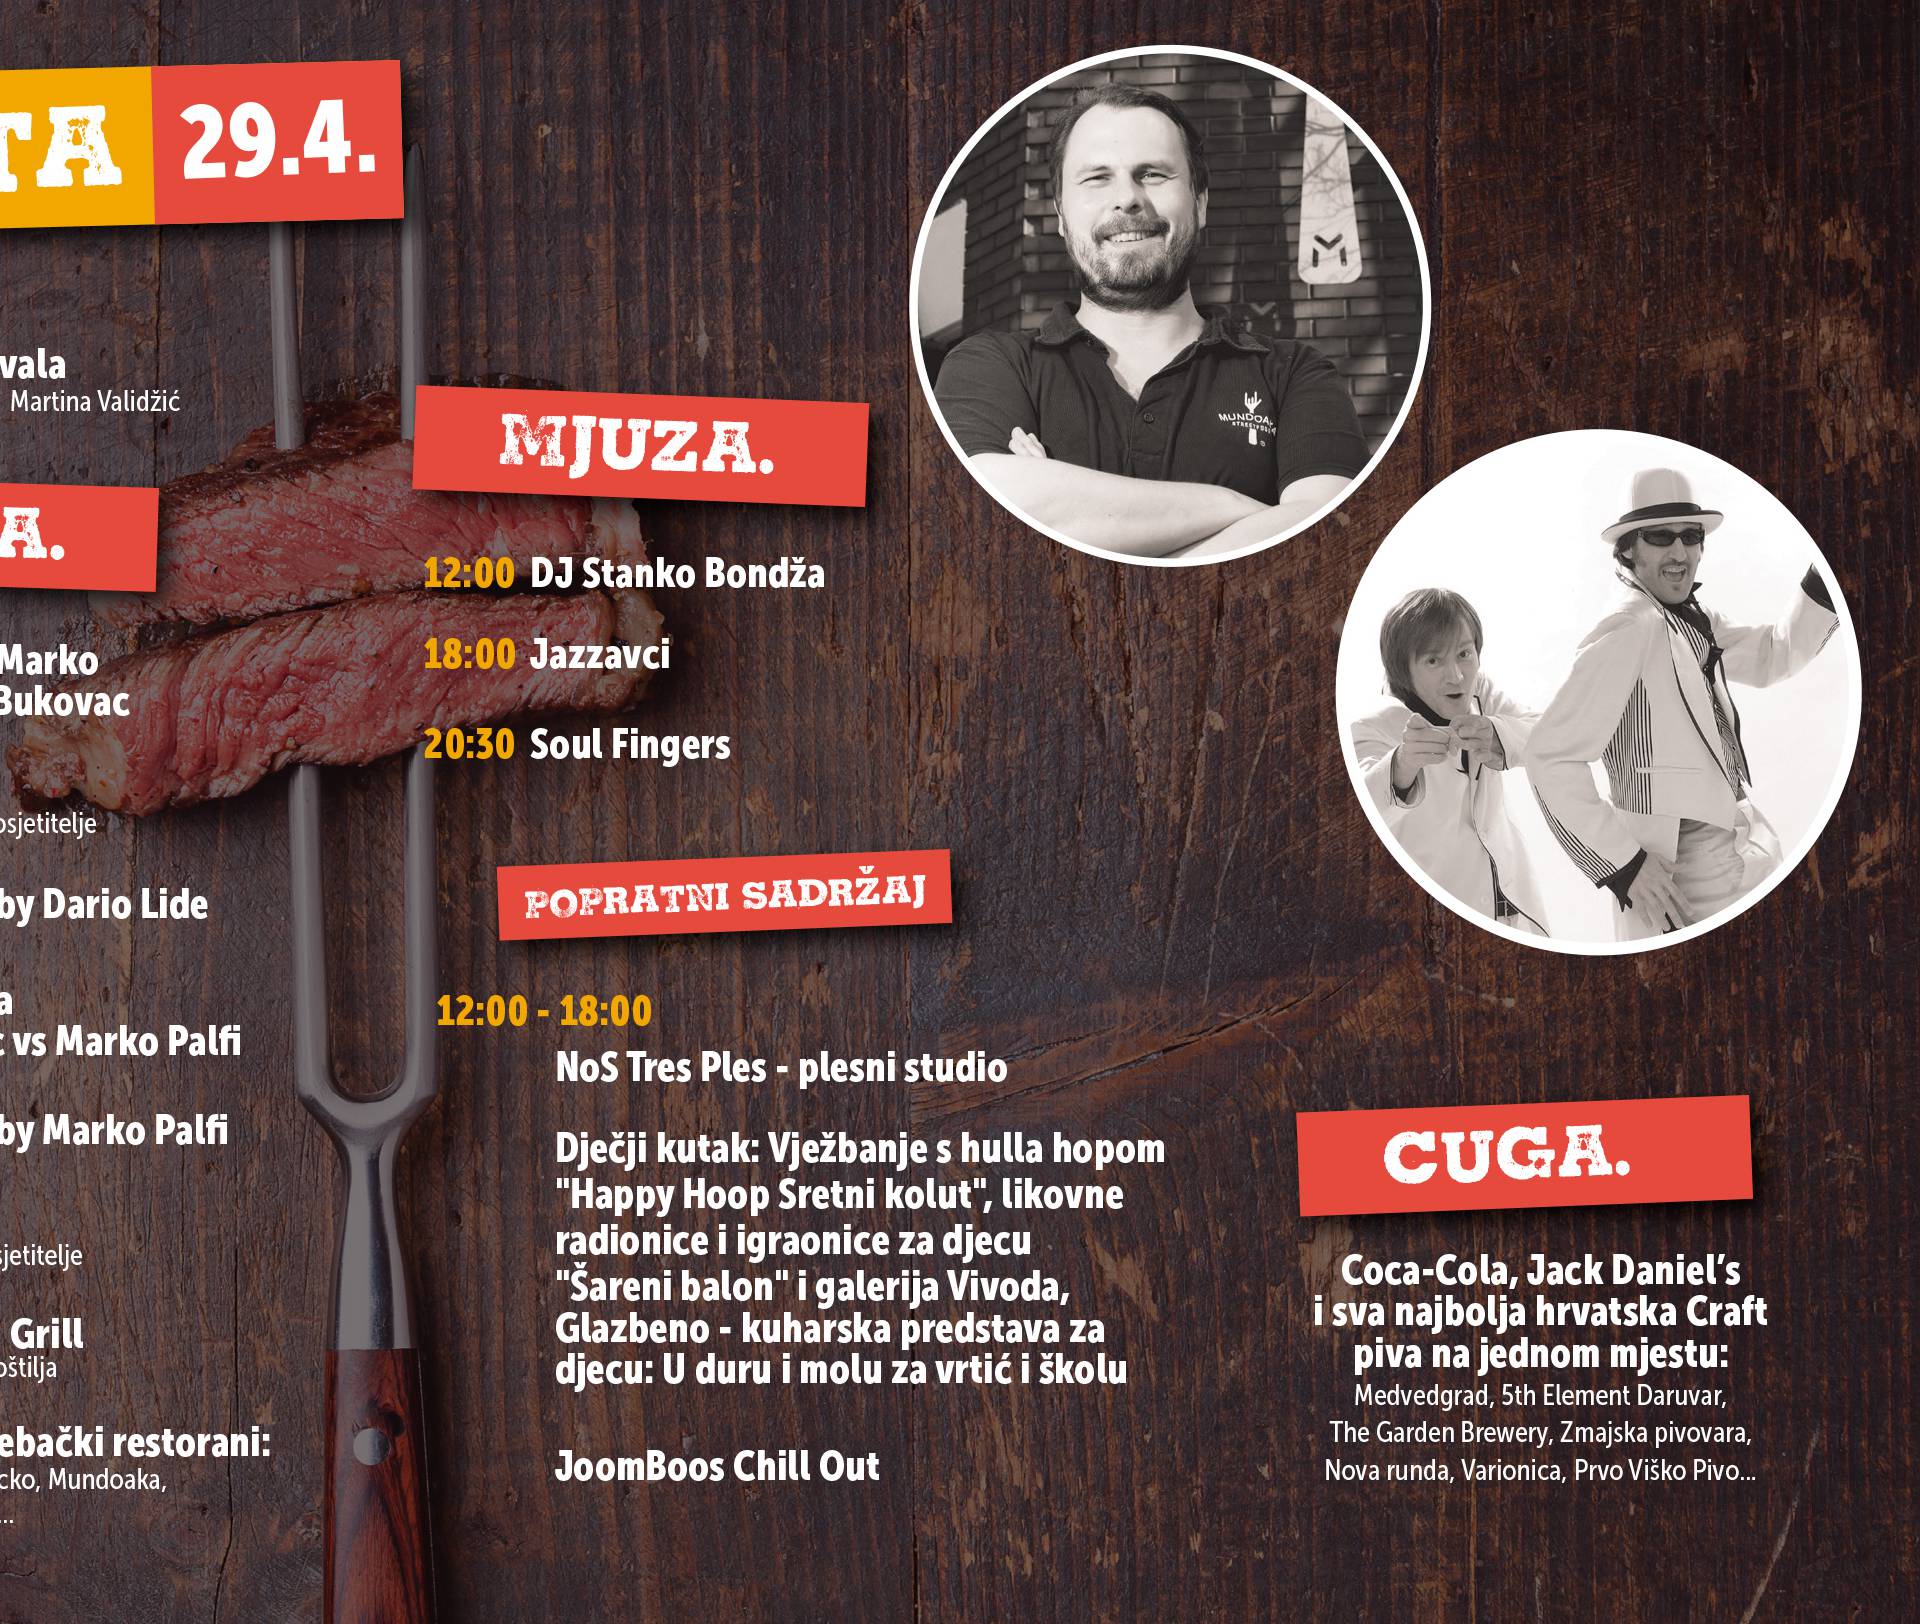 Zagreb Chill&Grill! Edo Maajka sutra će otvoriti tulum godine